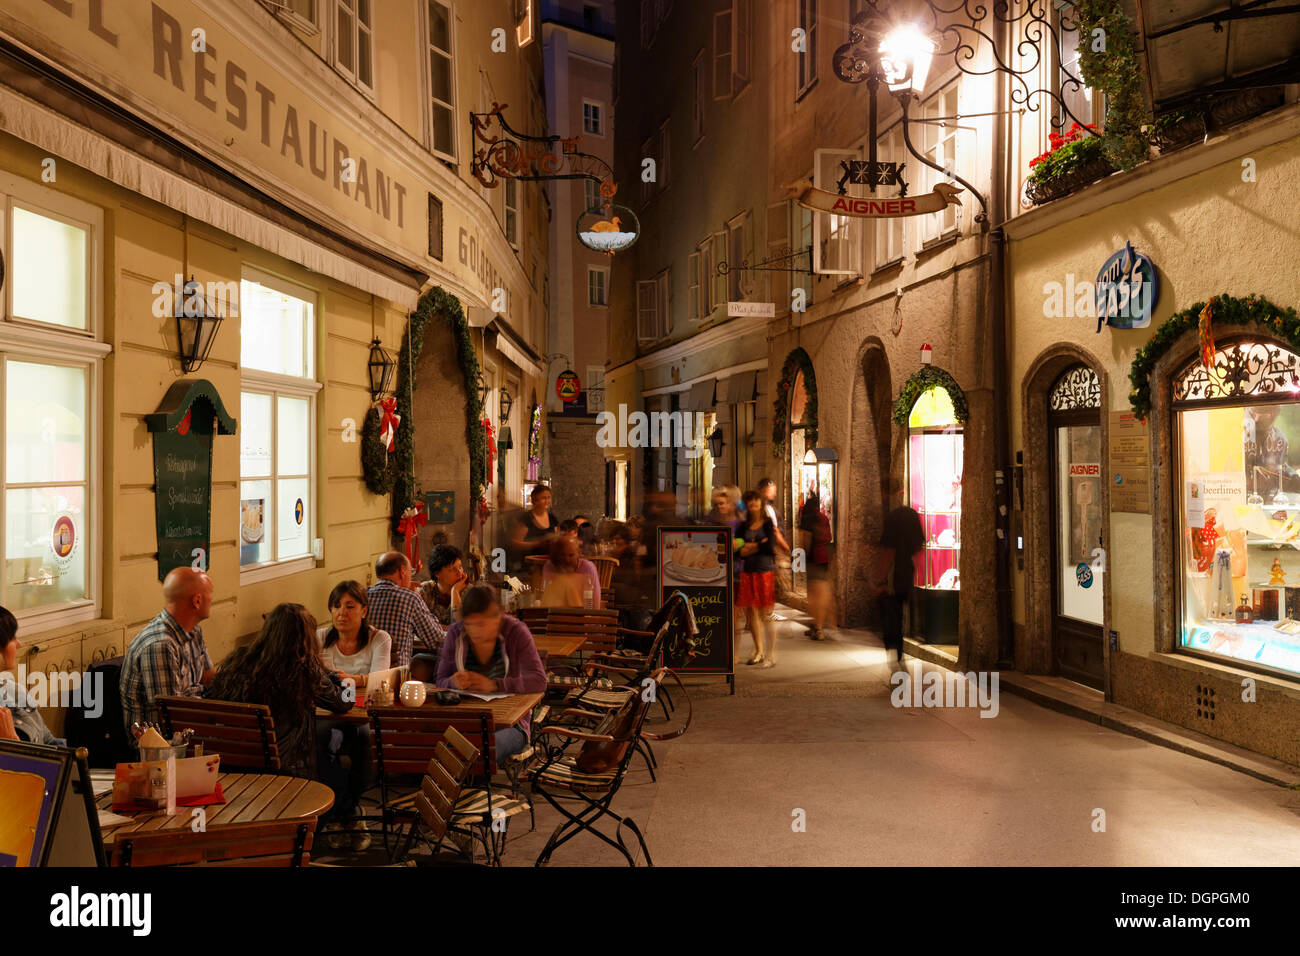 Restaurant of the Goldene Ente Hotel, Goldgasse alley, old town of Salzburg, Austria, Europe, PublicGround Stock Photo